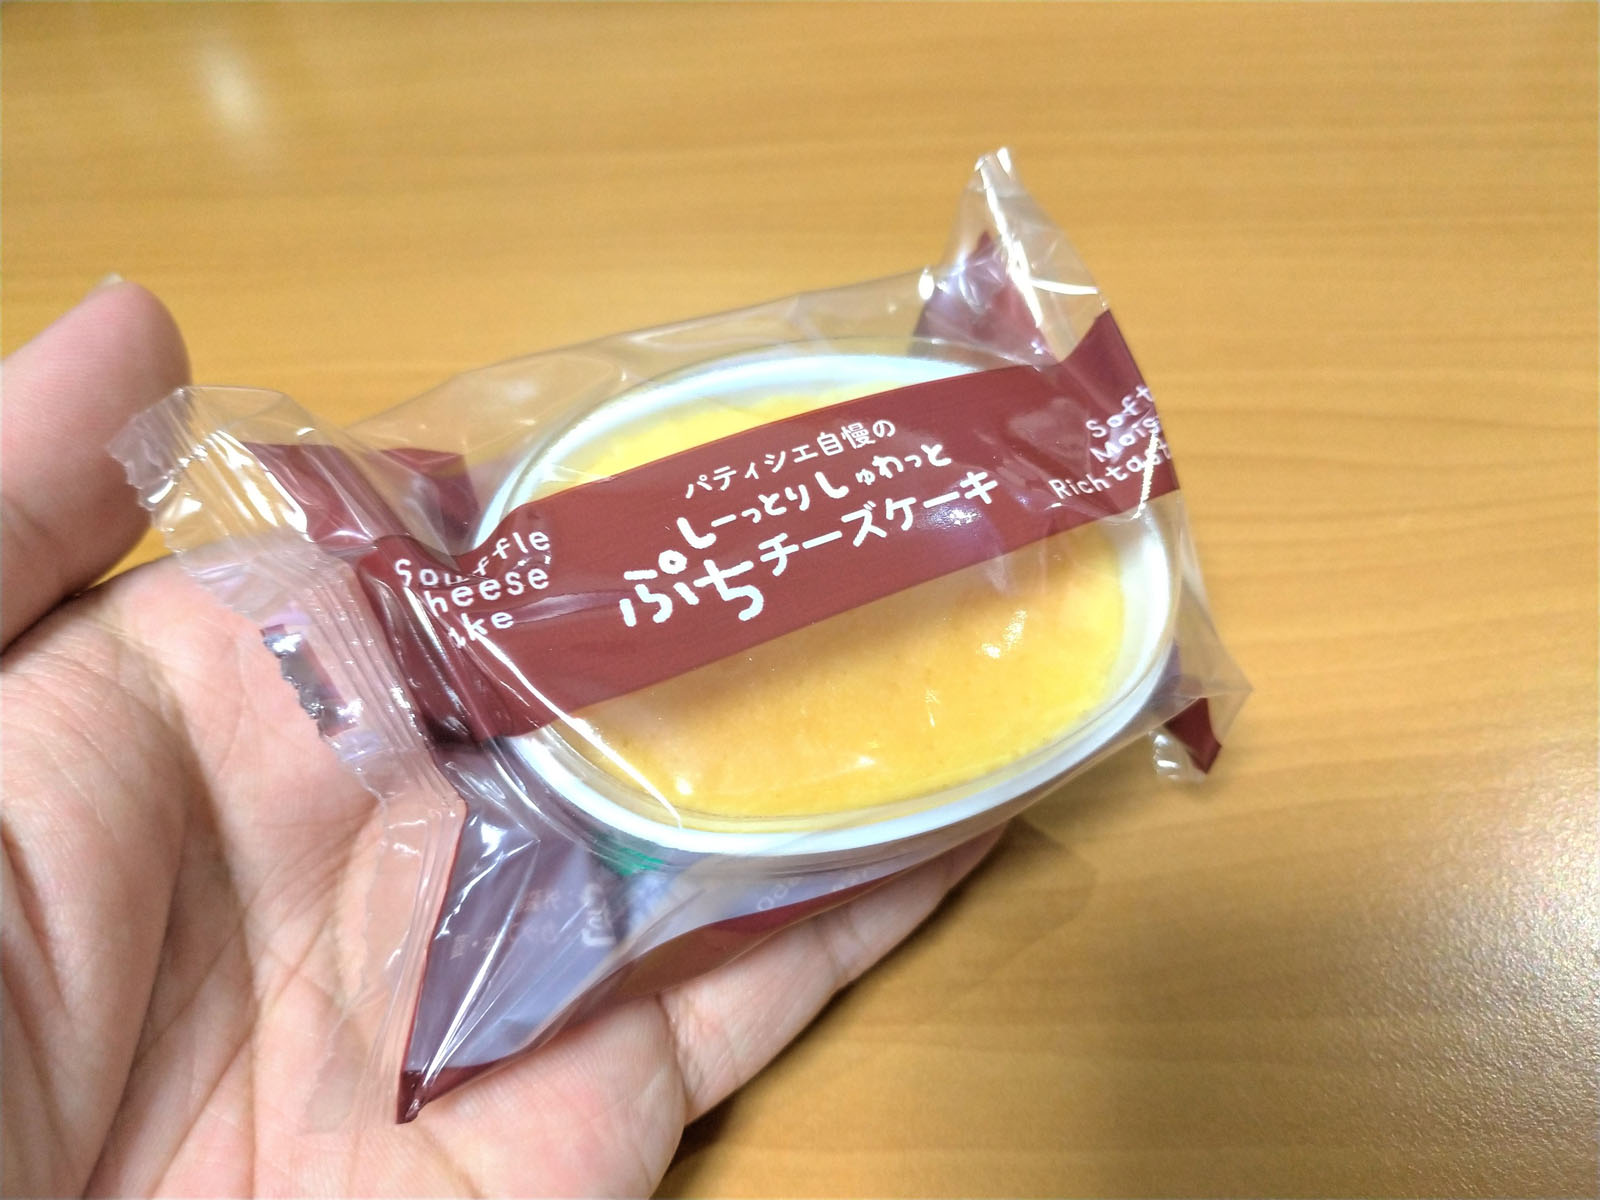 冷やしてもおいしい小さなチーズケーキ わかさいも本舗の パティシエ自慢のしーっとりしゅわっと ぷちチーズケーキ 北日本サロン